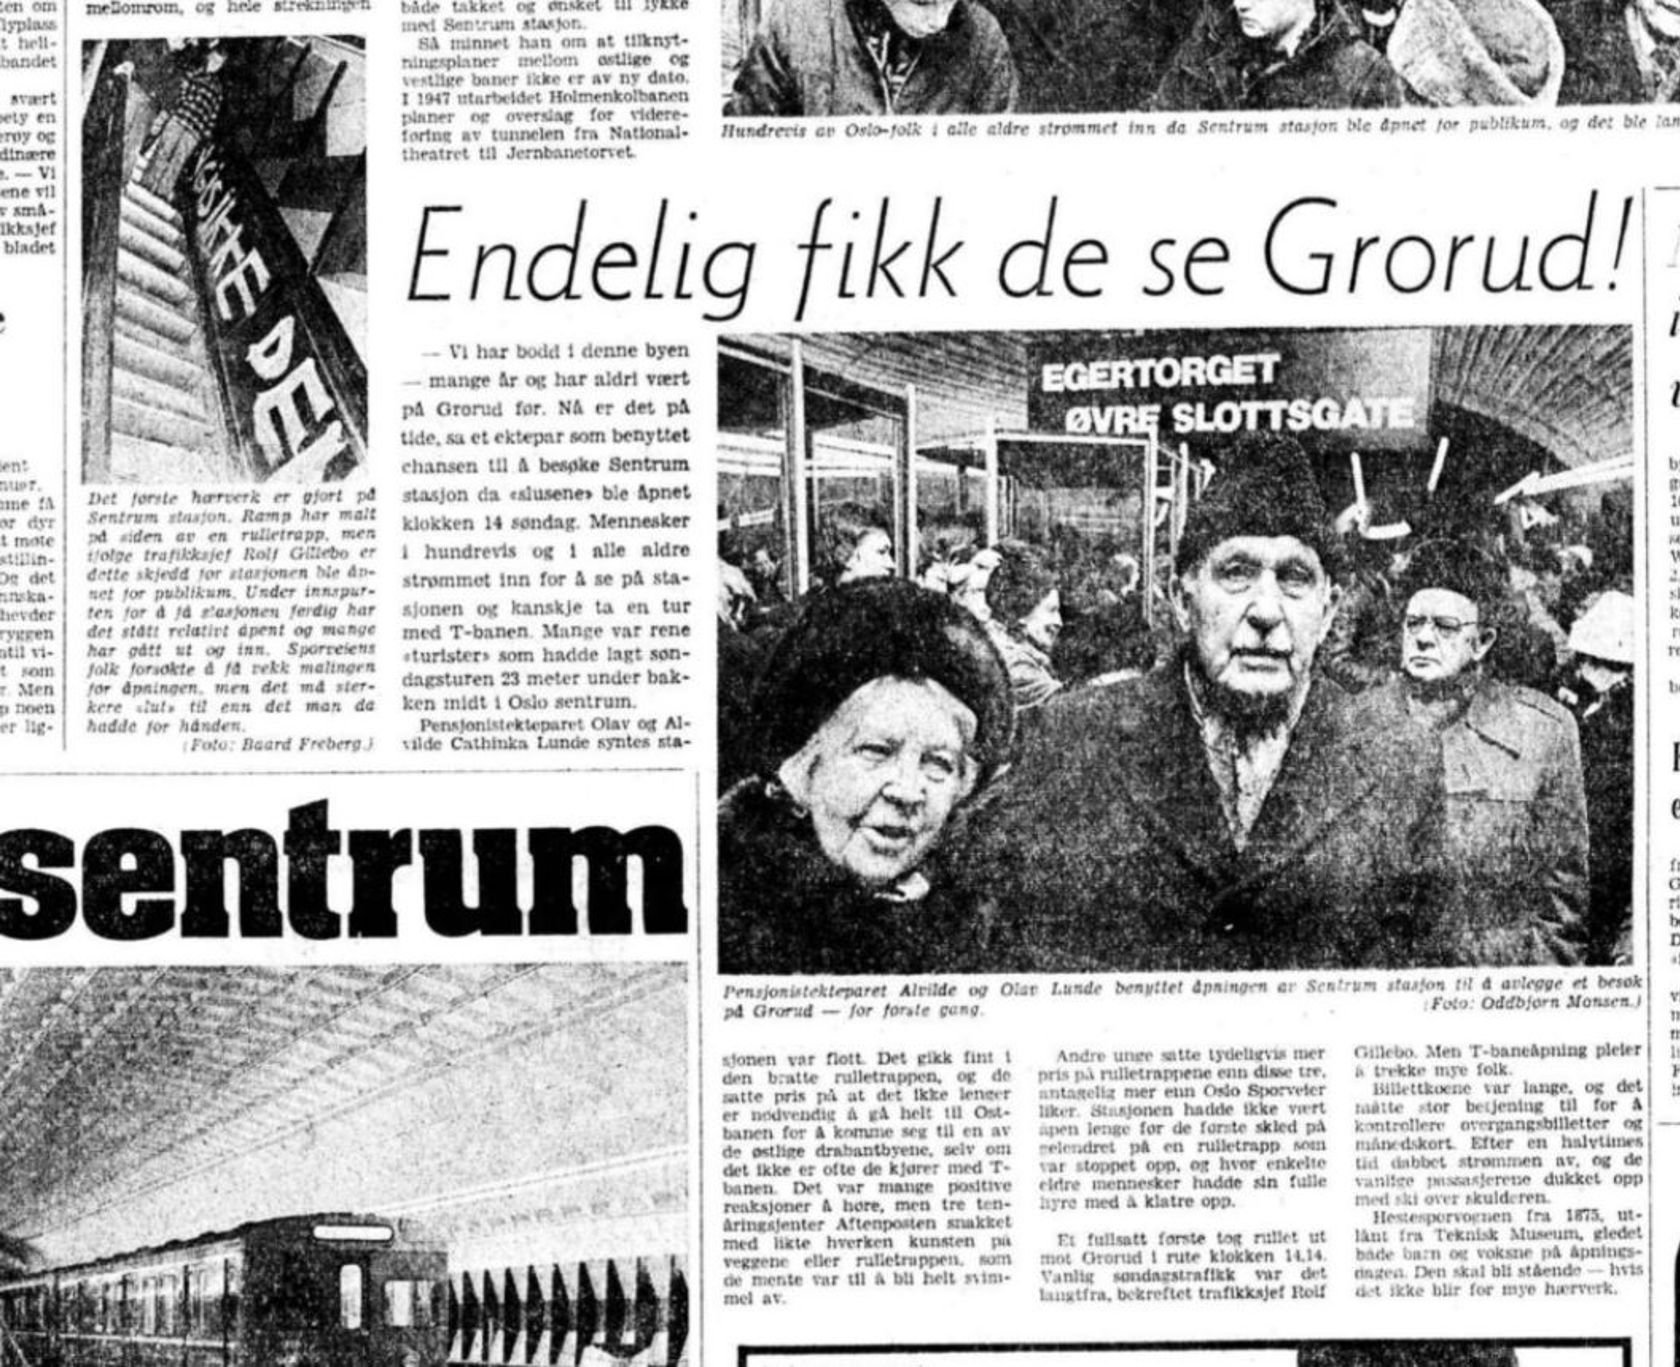 Bilde av en gammel avisartikkel med tittel "Endelig fikk de se Grorud" og bilde av tre mennesker med vinterutstyr som ser mot kamera.